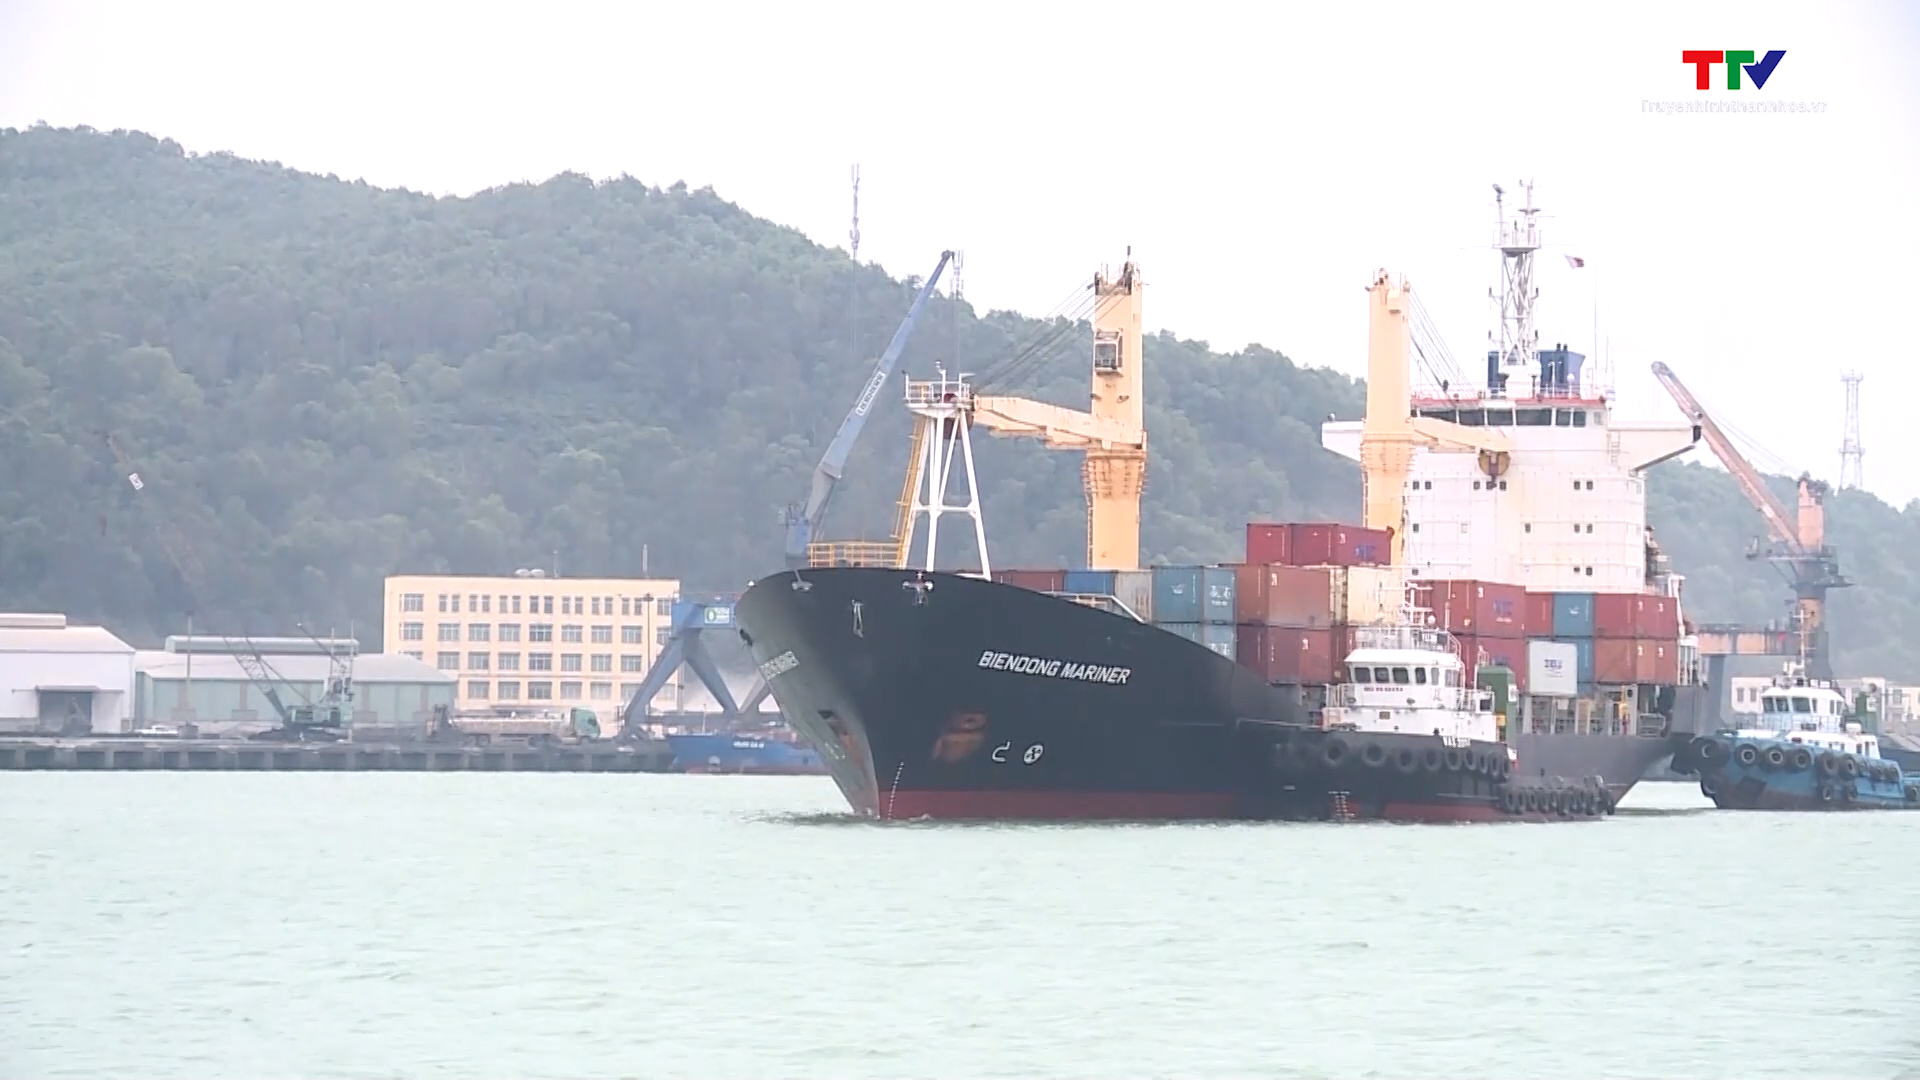 Nhiều chính sách hỗ trợ hoạt động xuất nhập khẩu qua Cảng Nghi Sơn - Ảnh 2.